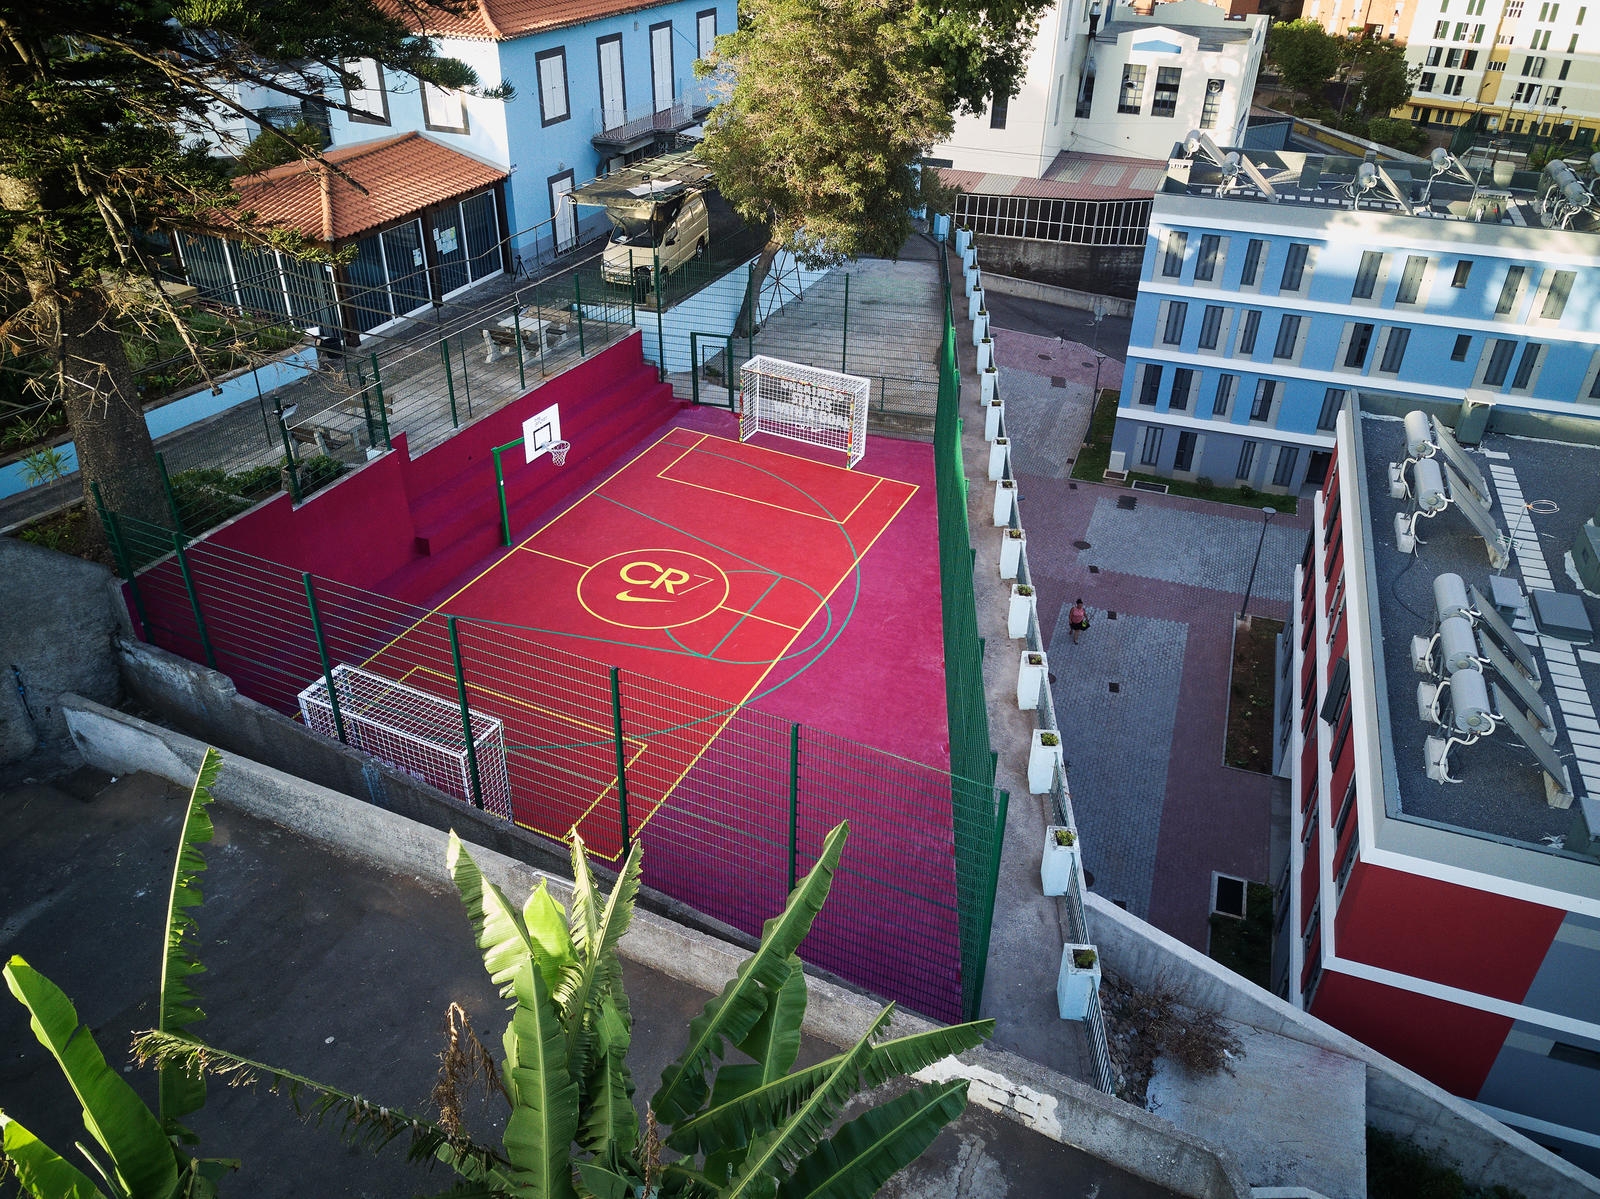 Nike renova campo de futebol no Funchal onde Ronaldo decidiu que queria ser o melhor do mundo (com vídeo) - Meios & Publicidade